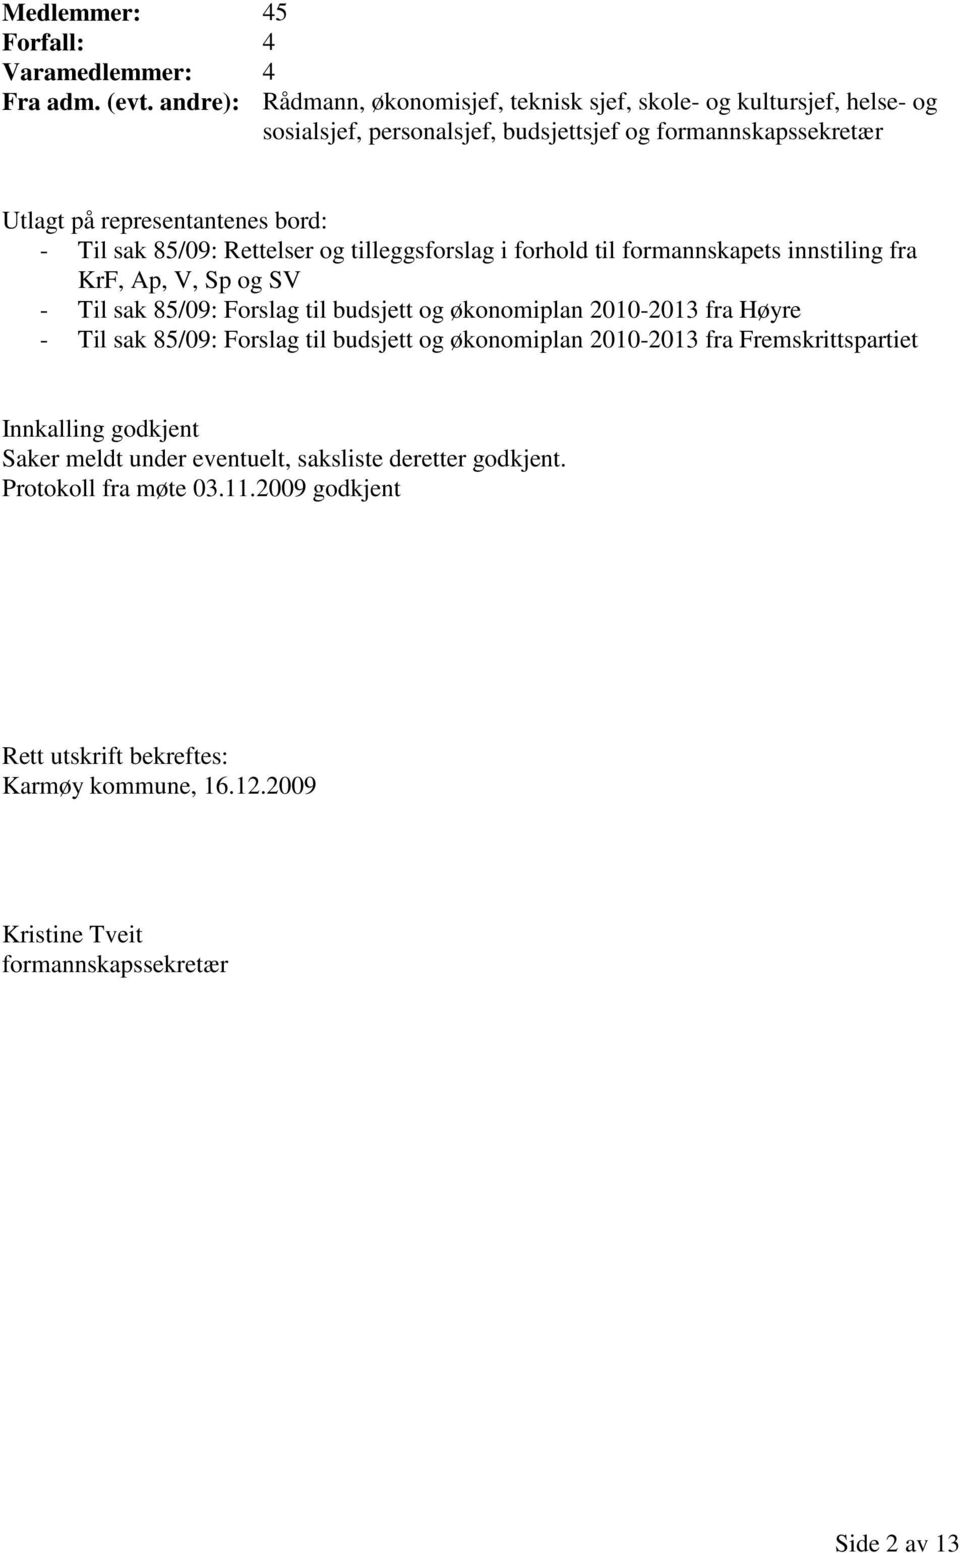 sak 85/09: Rettelser og tilleggsforslag i forhold til formannskapets innstiling fra KrF, Ap, V, Sp og SV - Til sak 85/09: Forslag til budsjett og økonomiplan 2010-2013 fra Høyre